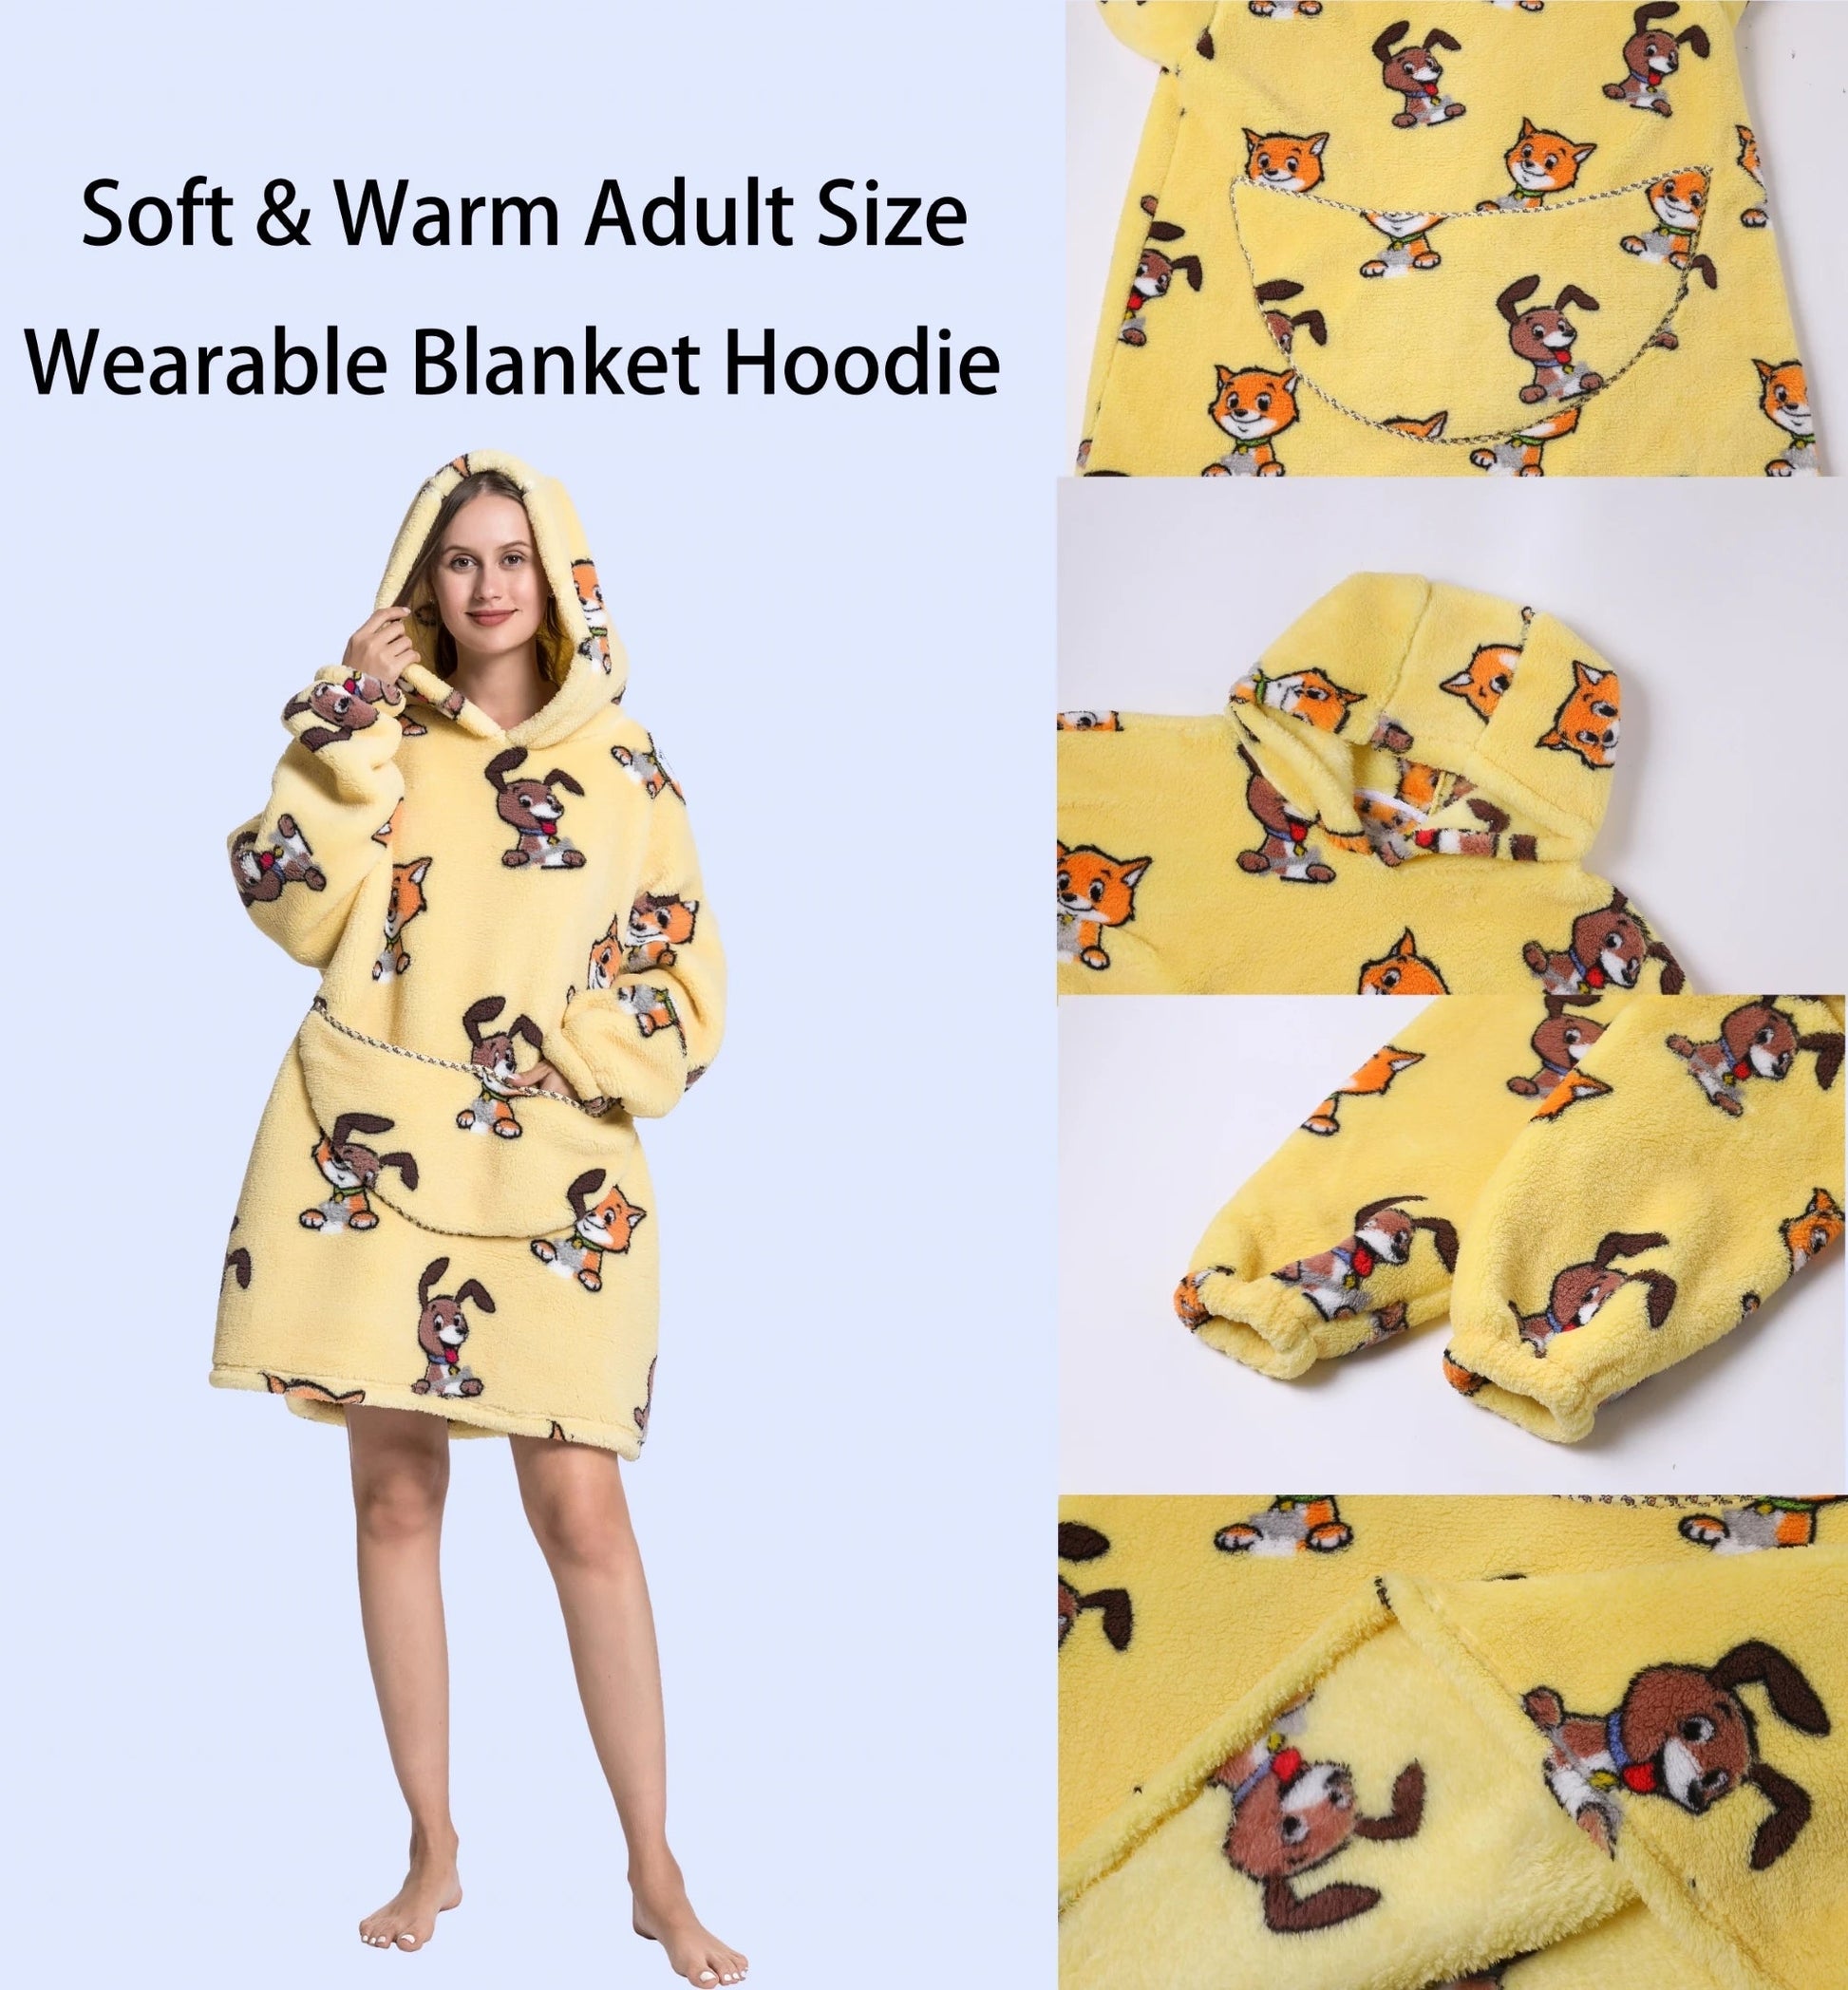 https://jehouze.com/cdn/shop/files/comfy-wearable-oversized-hoodie-adult-kids-toddles-blanket-sleepwear-loungewear-jehouze-884008.webp?v=1700511149&width=1946